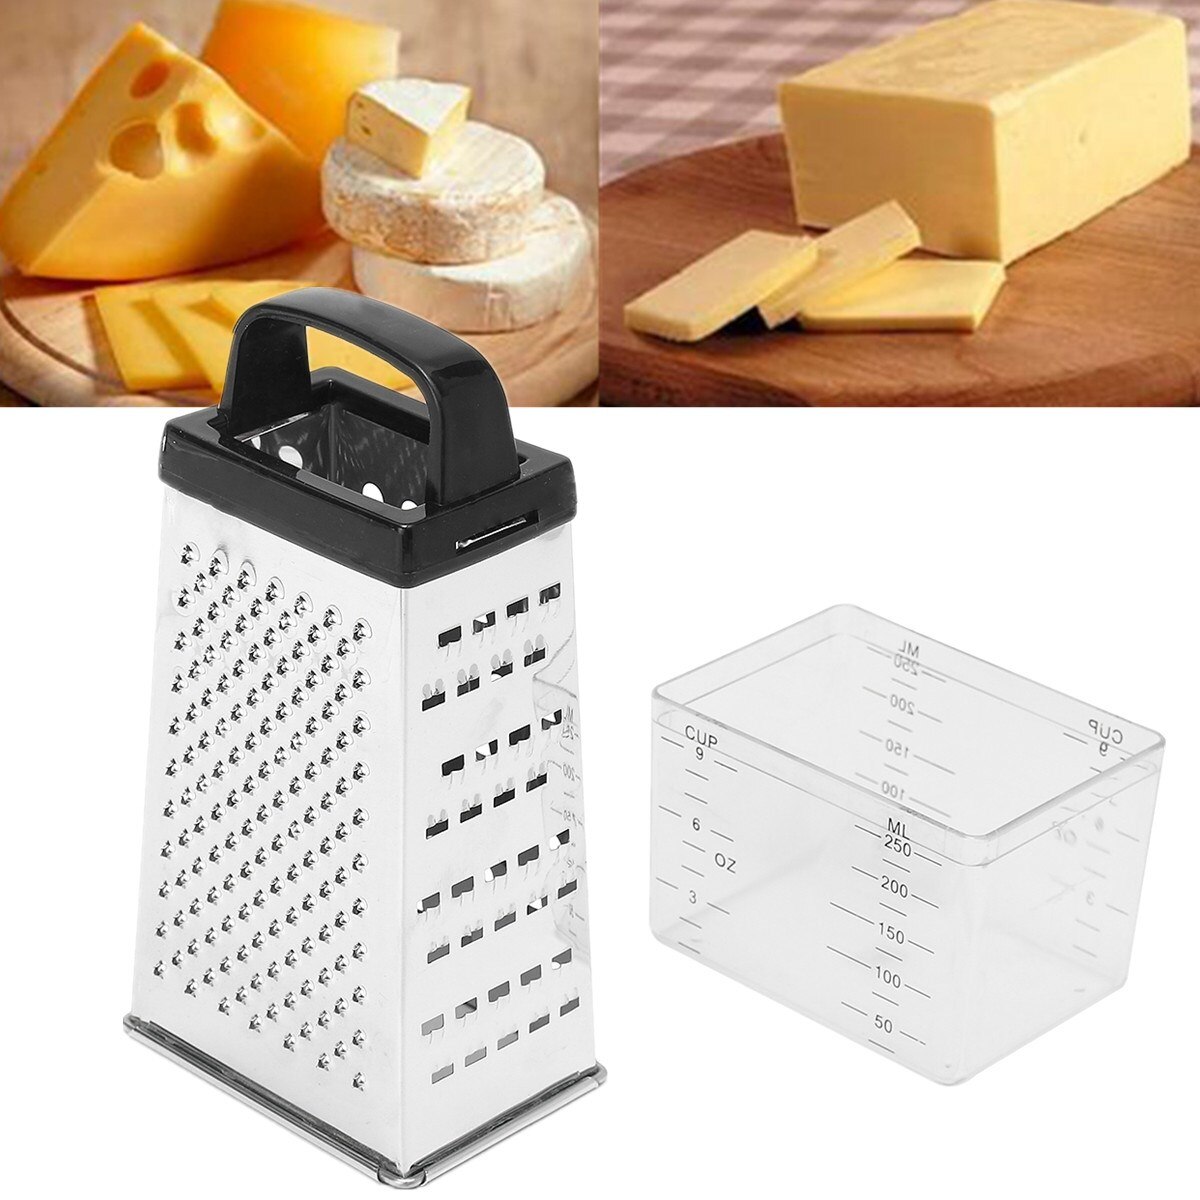 Sort / hvid tilfældig 4- sidet knive ost grøntsager rivejern gulerod agurk skiver skæreboks container køkkenudstyr rustfri